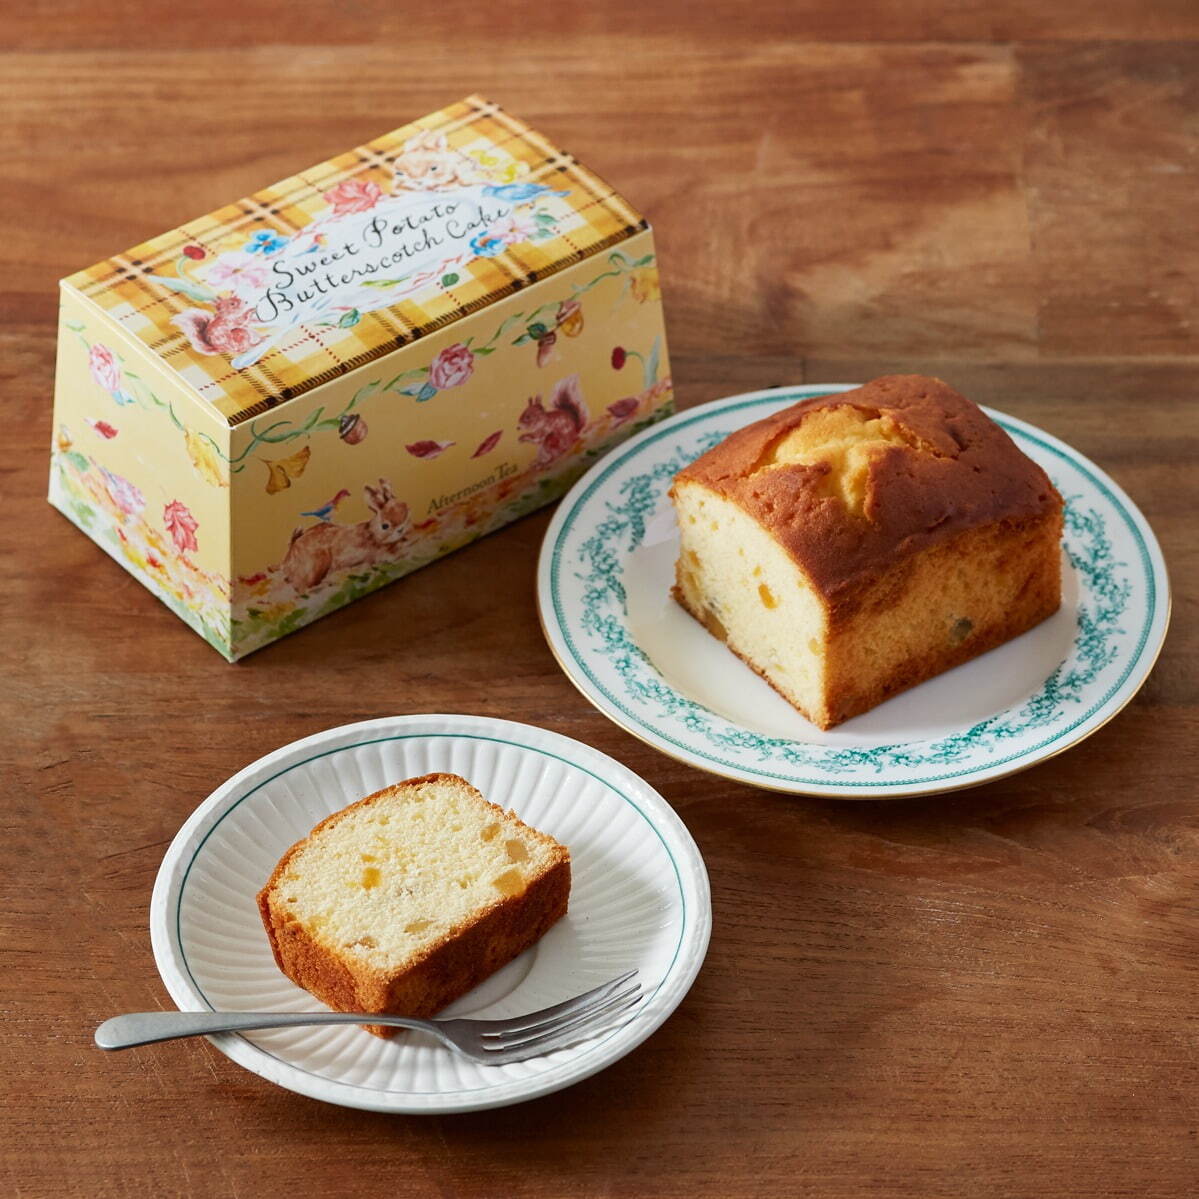 「安納芋のバタースコッチケーキ」1,100円